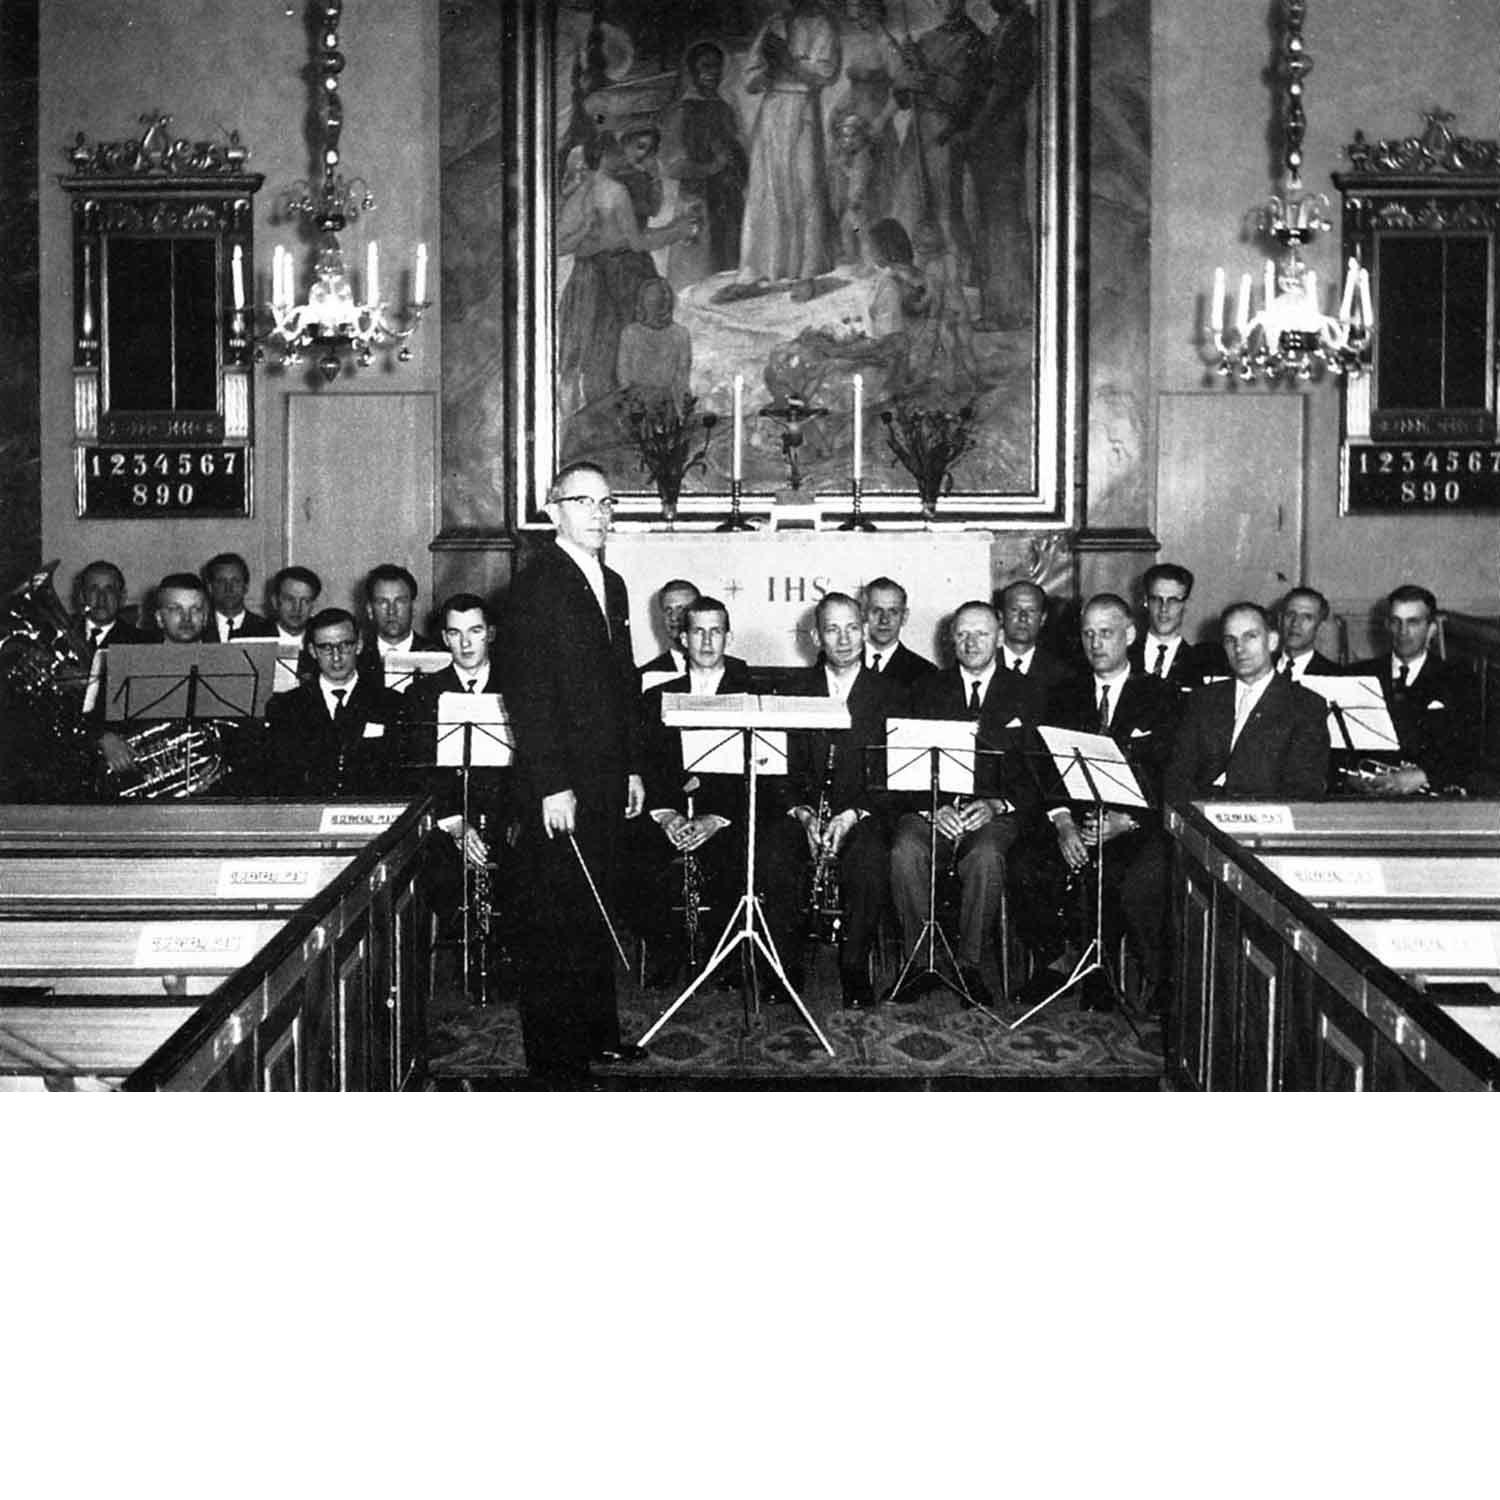 Orrefors musikkår första kyrkokonsert i början av 1960 i Hälleberga Kyrka